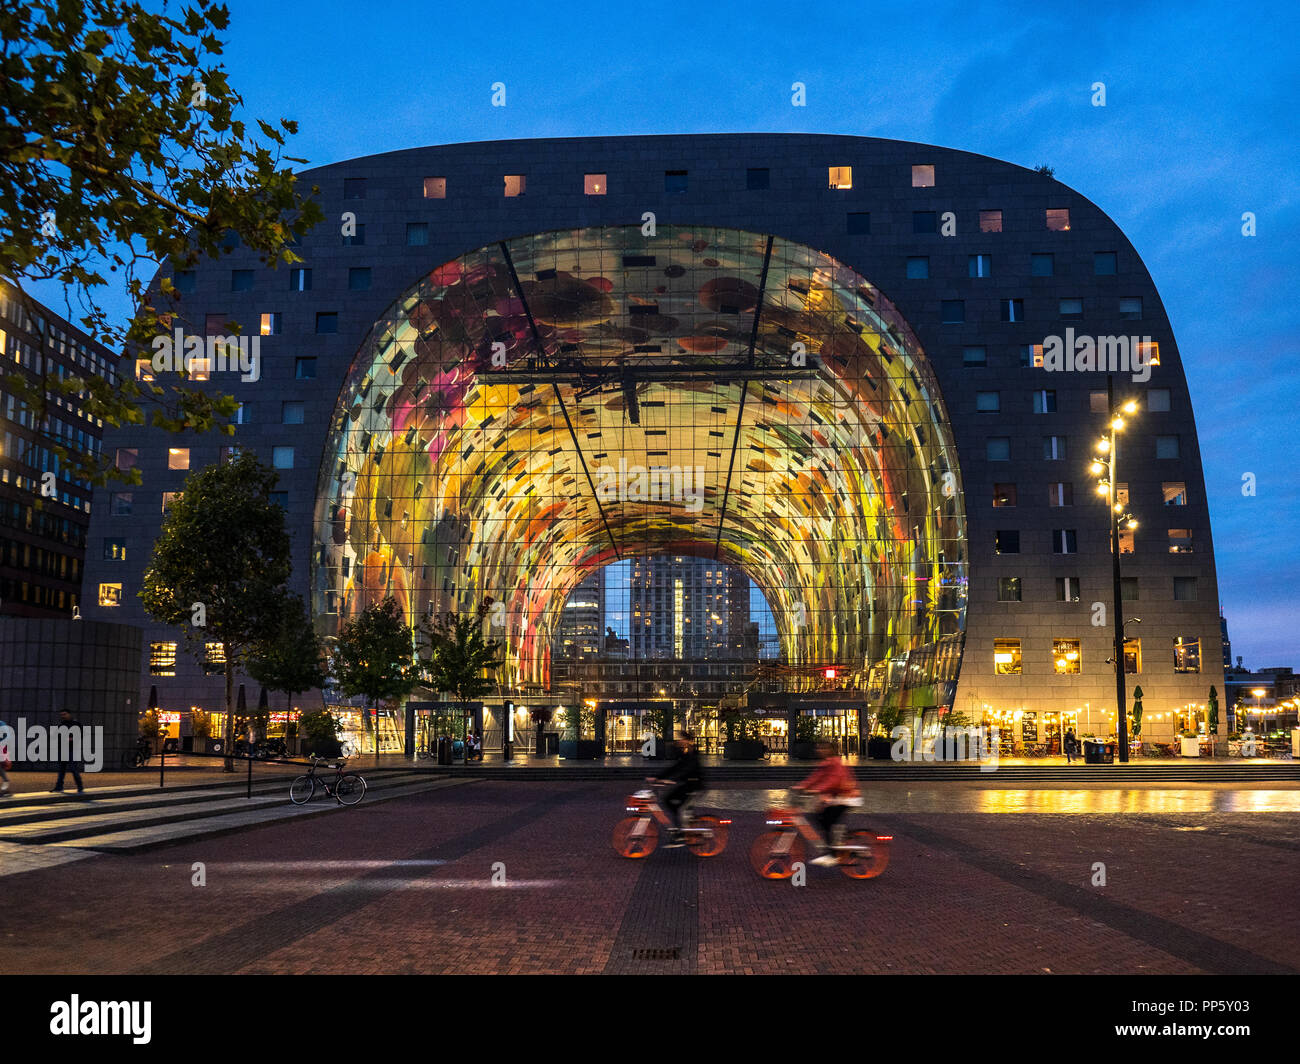 Rotterdam Rotterdam Markthal Market Hall abrió 2014 consta de una gran sala de mercado con apartamentos residenciales y oficinas arriba. Arquitecto MVRDV Foto de stock